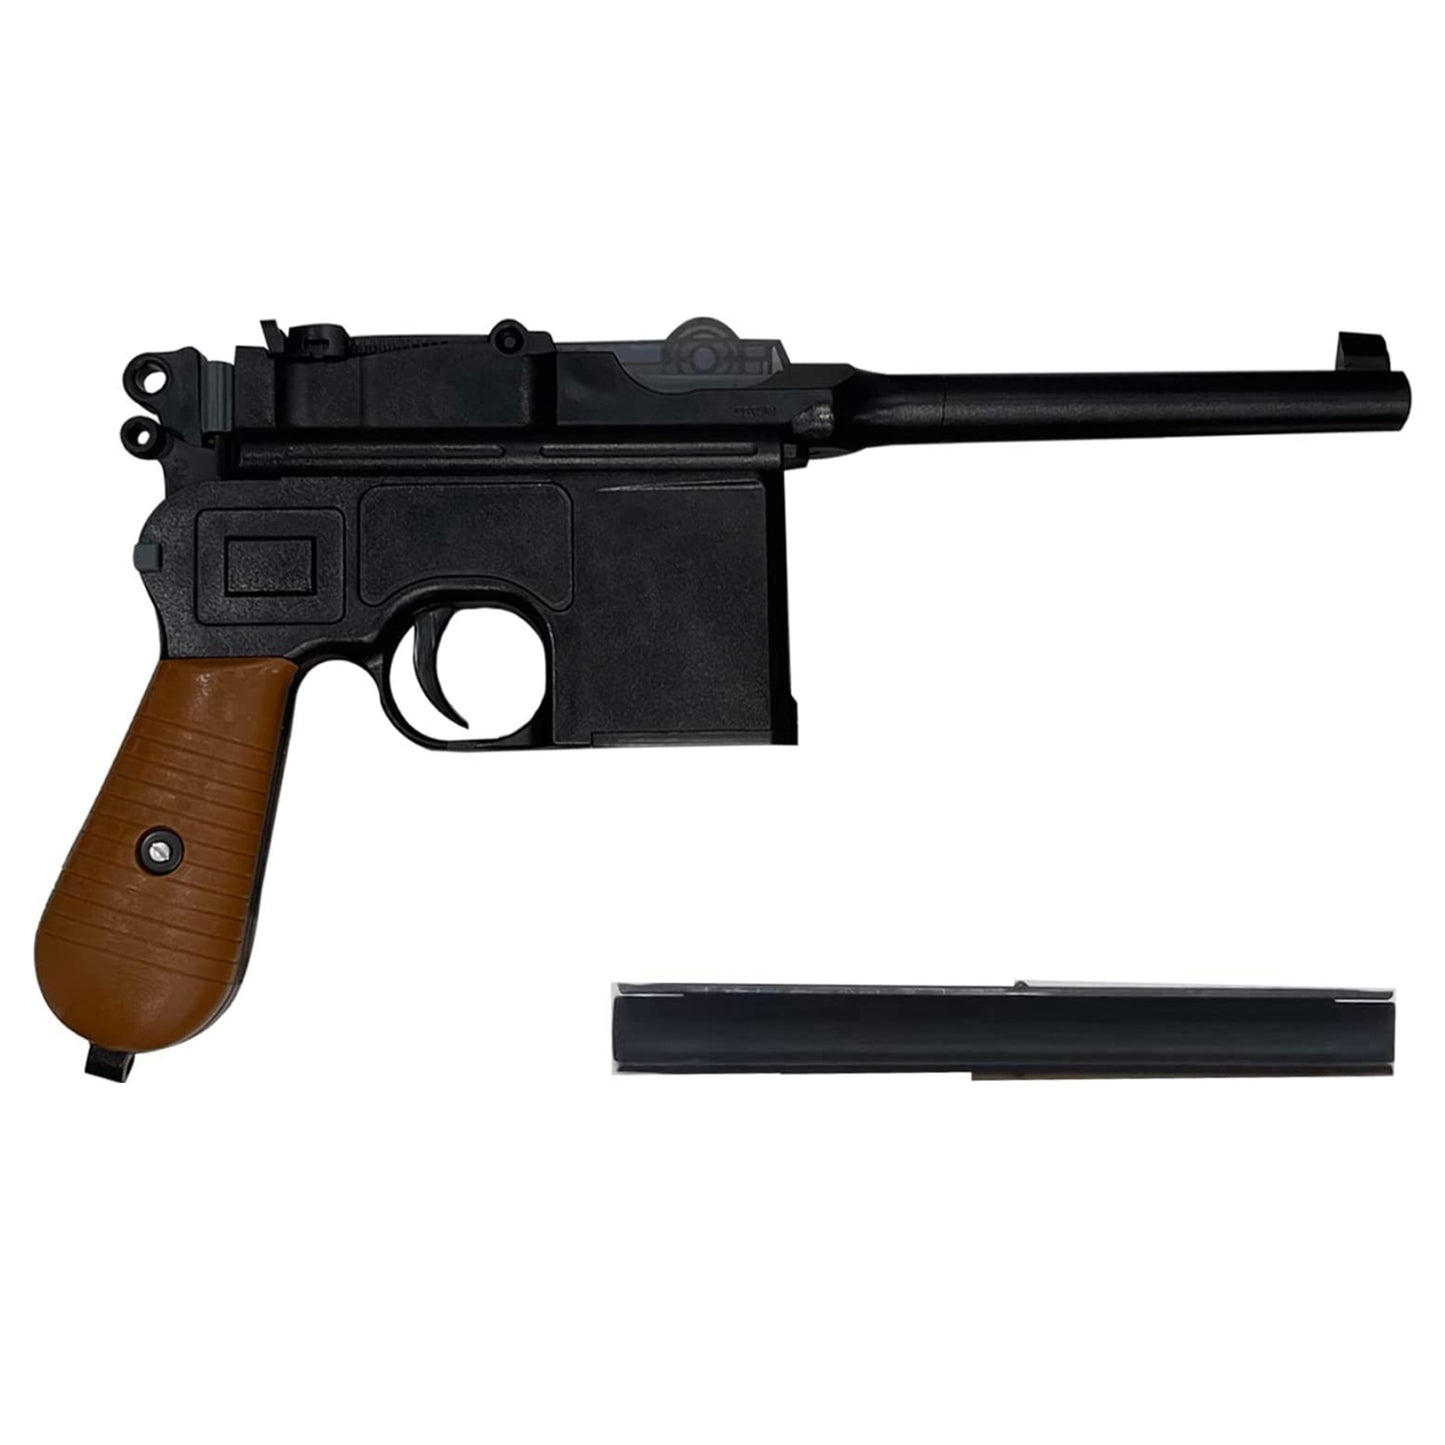 Mauser C96 model gun Assembling a toy teaching model Handgun-style toy gun 